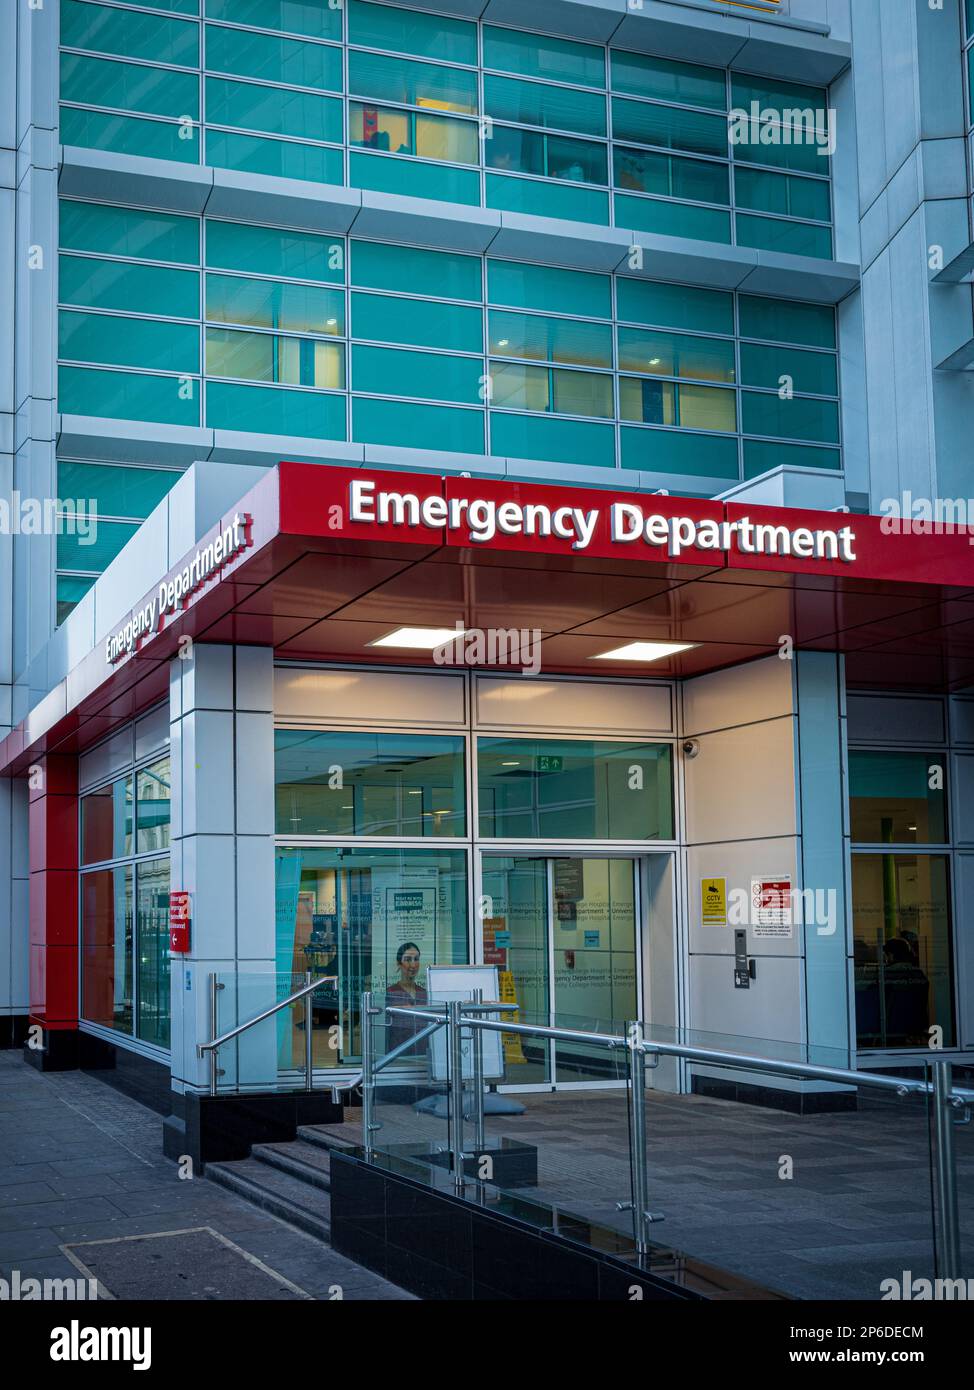 Dipartimento di emergenza dell'ospedale - Dipartimento di emergenza dell'ospedale A&e - Dipartimento di emergenza e incidenti in un ospedale britannico a Londra. Foto Stock